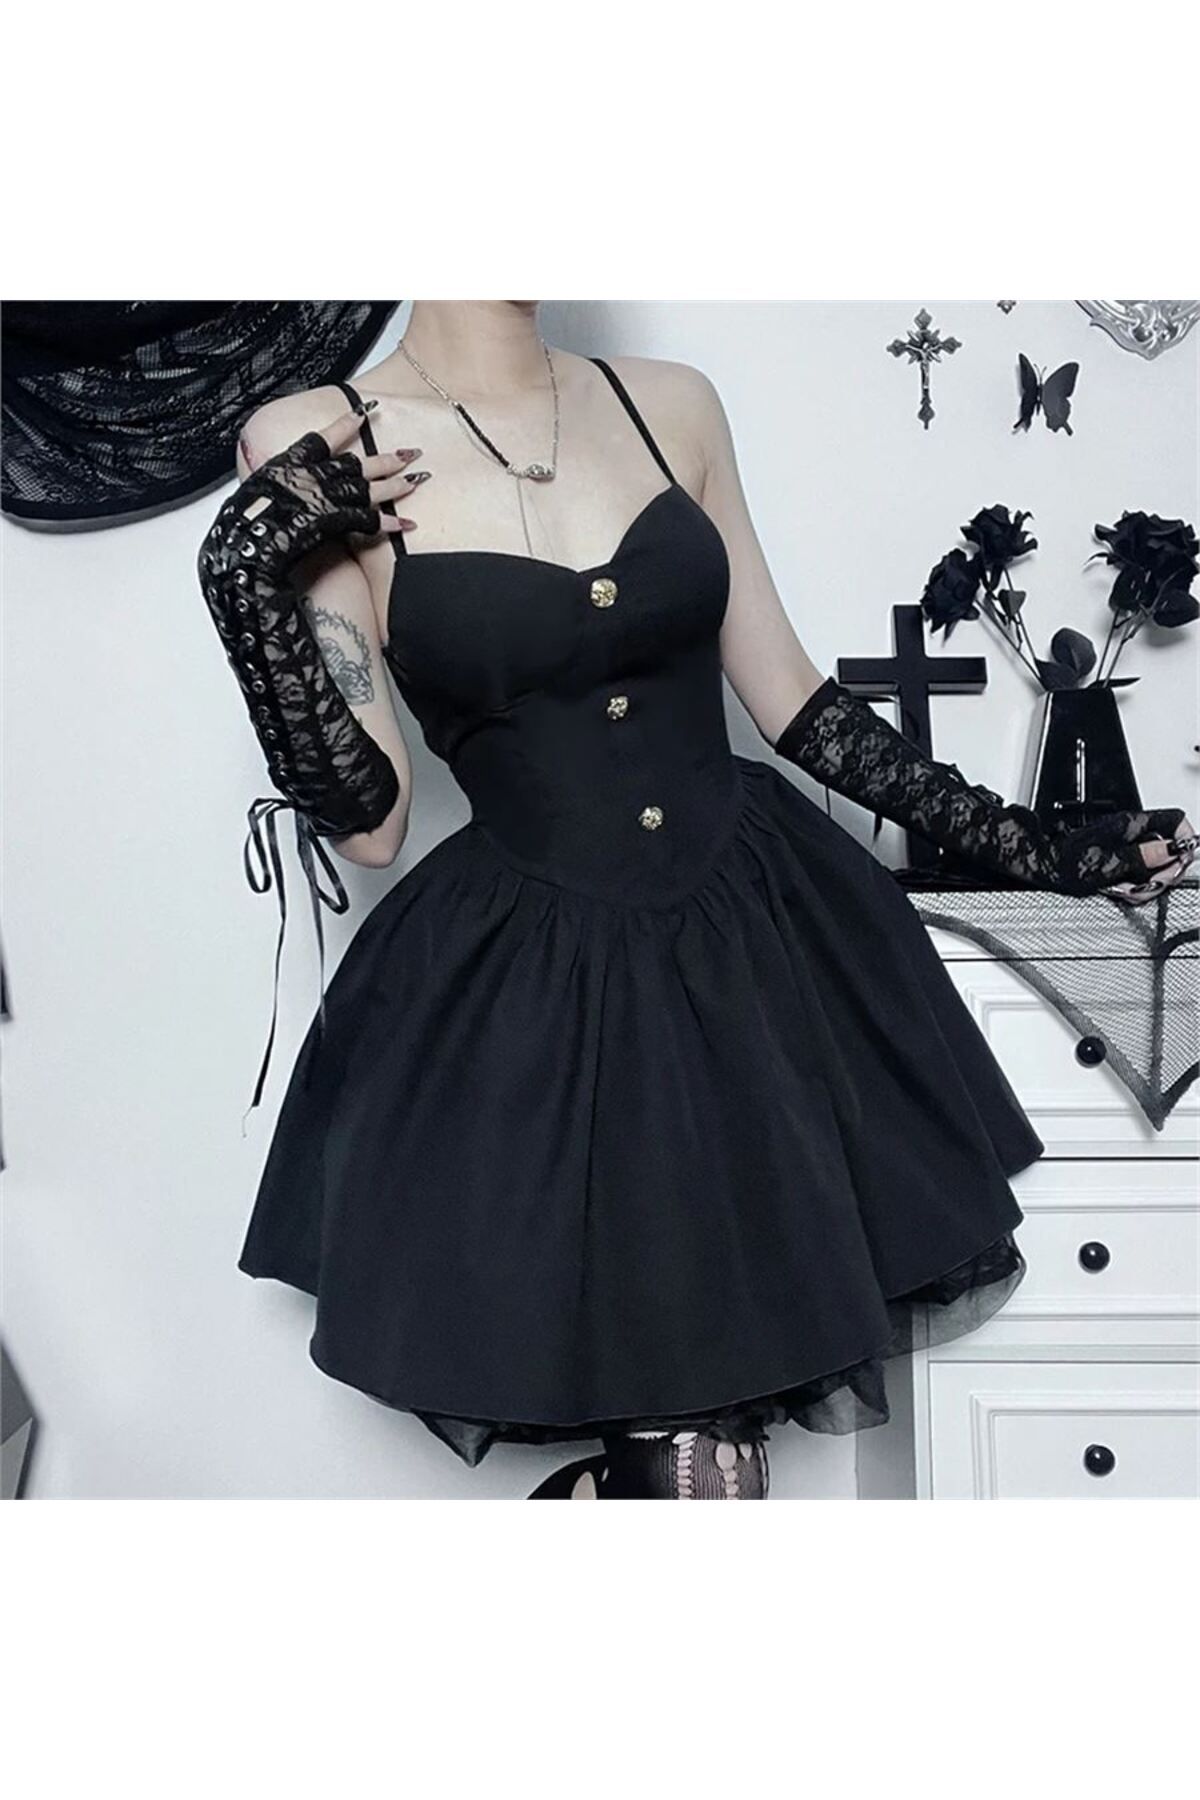 Köstebek Gothic Style Askılı Düğme Detay Tüllü Elbise